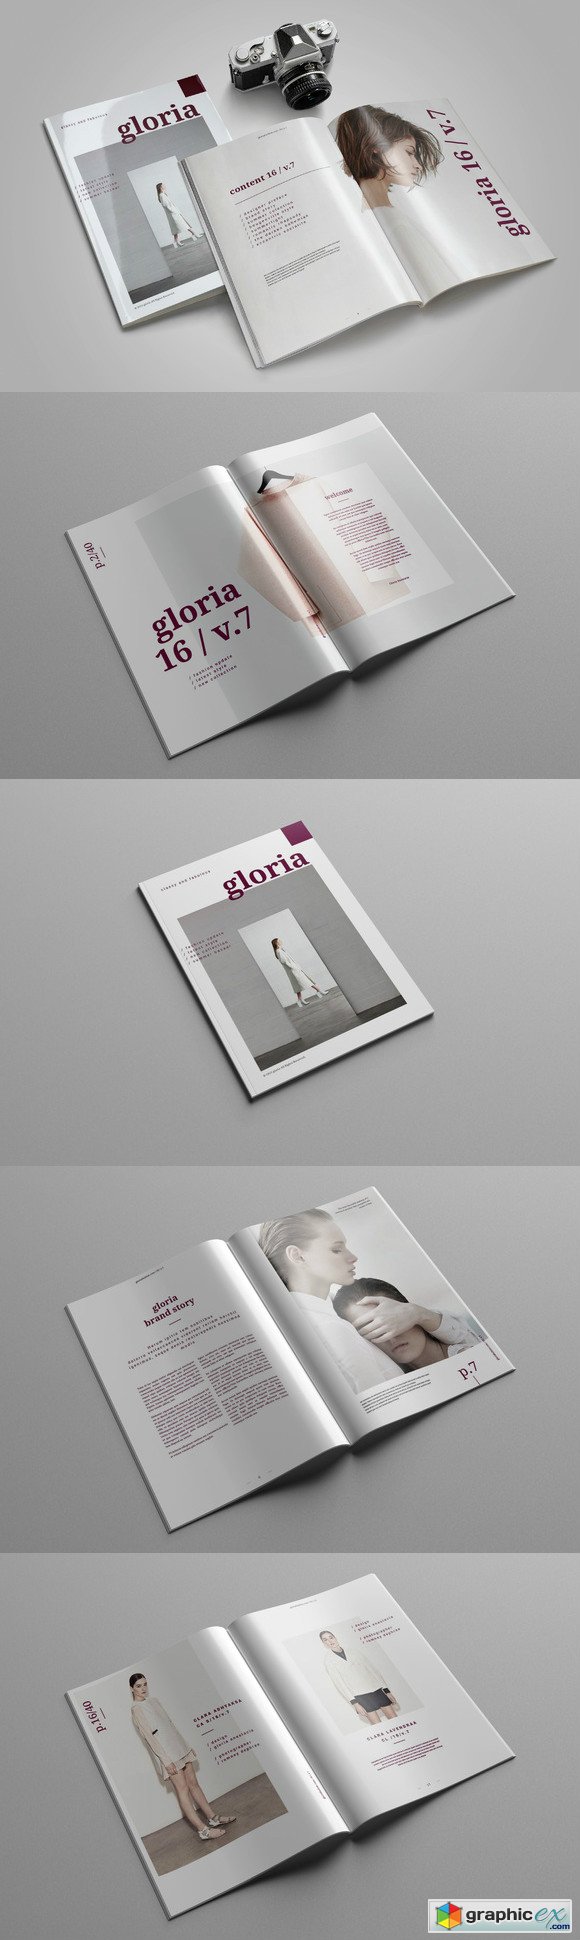 Gloria Brochure Catalogs